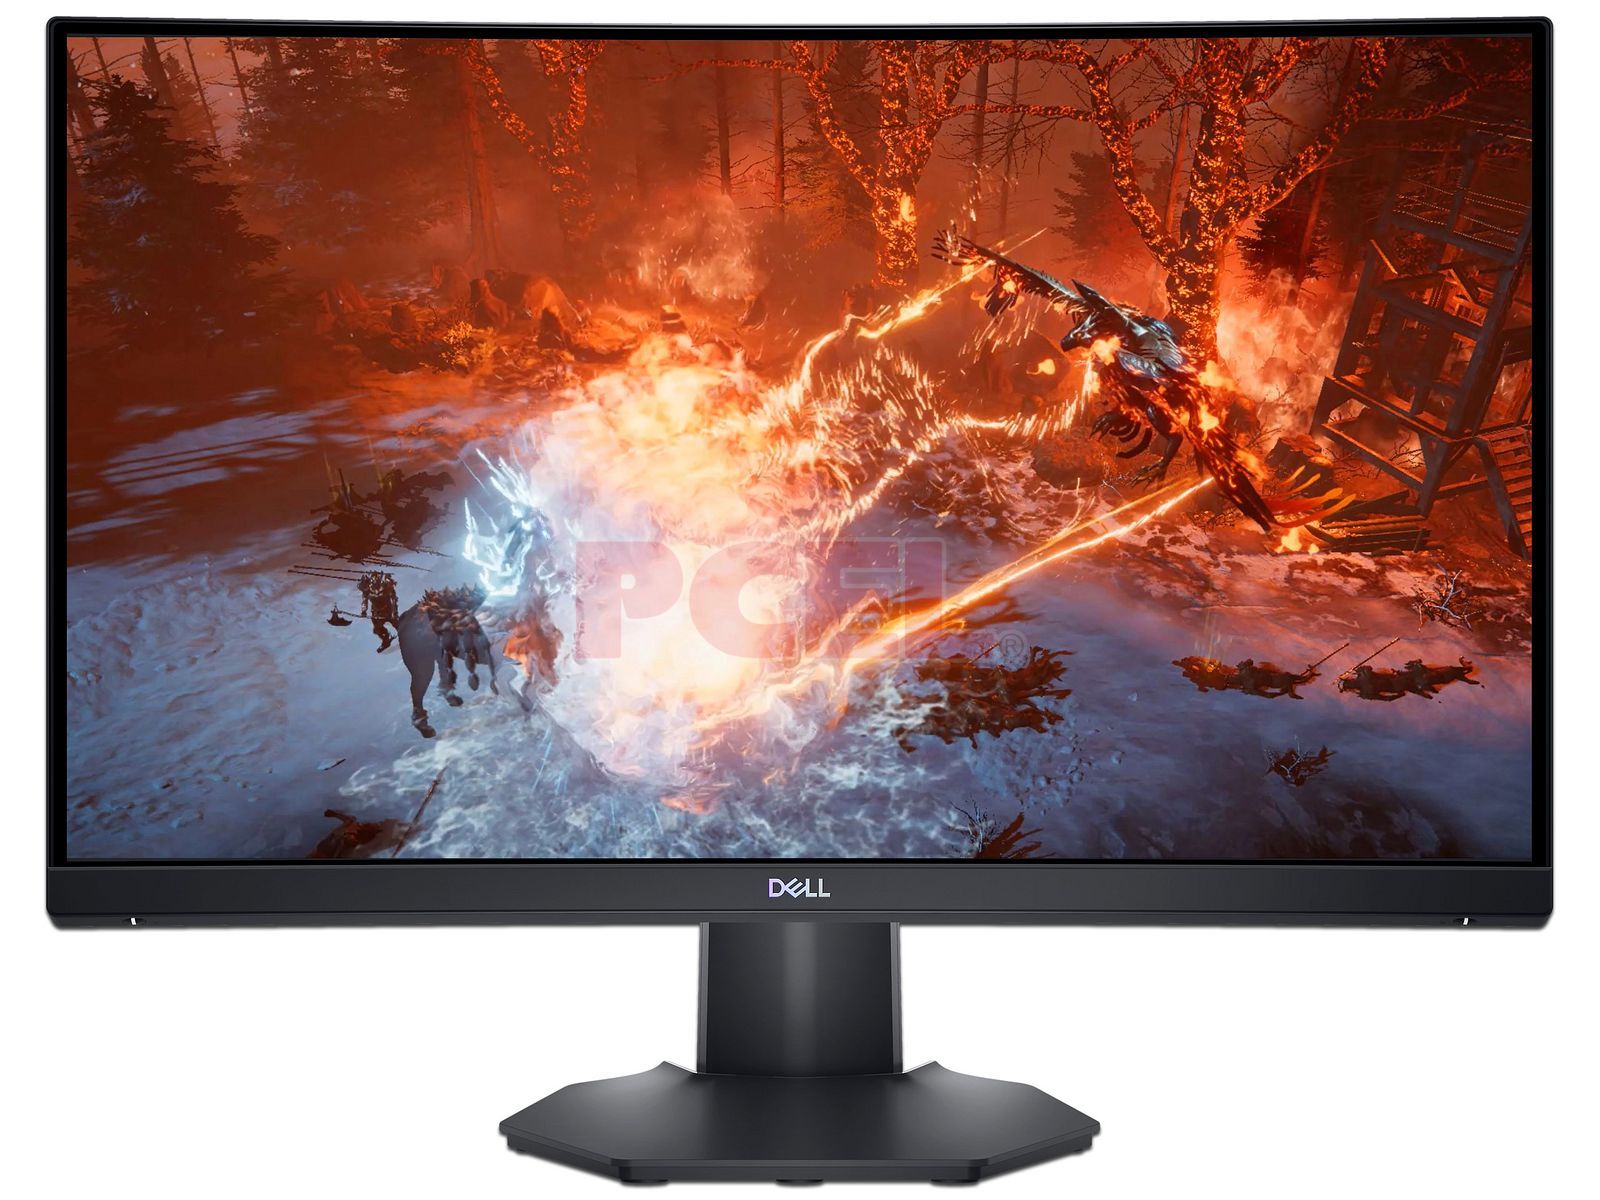  Dell Monitor para juegos de 24 pulgadas y 165 Hz, pantalla Full  HD de 1920 x 1080, tiempo de respuesta de 1 ms, IPS, tecnología AMD  FreeSync, gama de colores sRGB